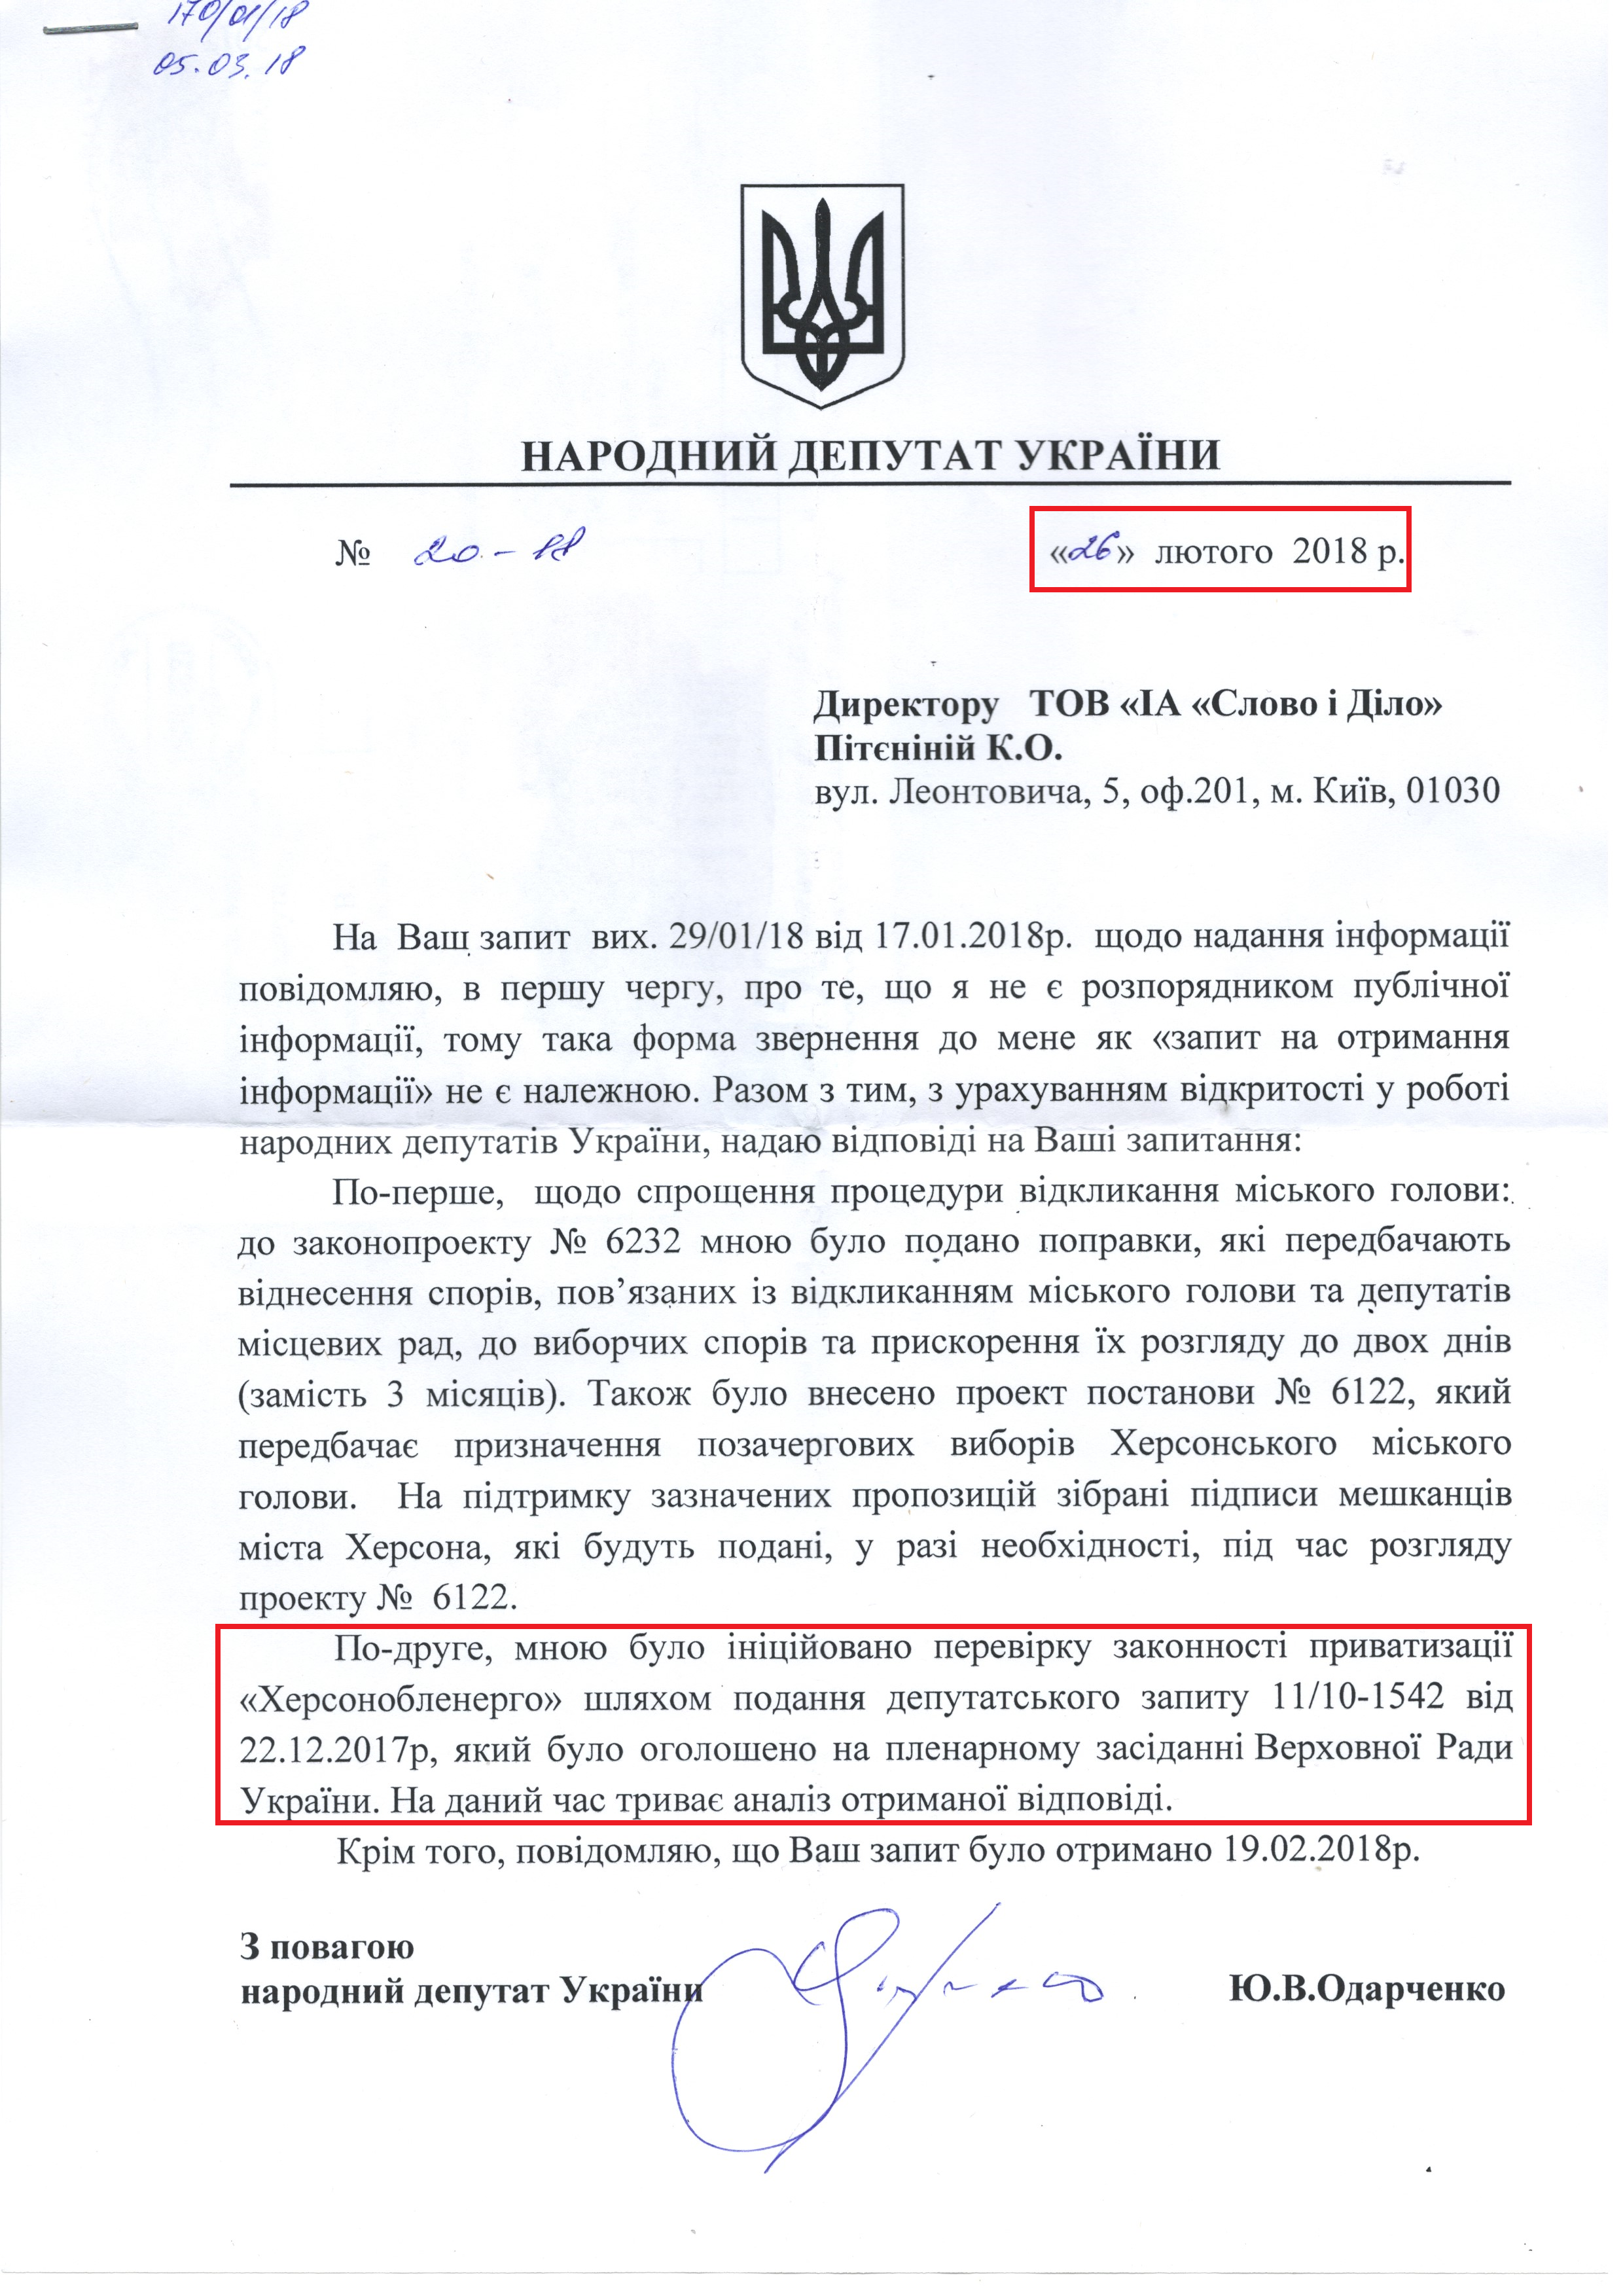 Лист від народного депутата Юрія Одарченка